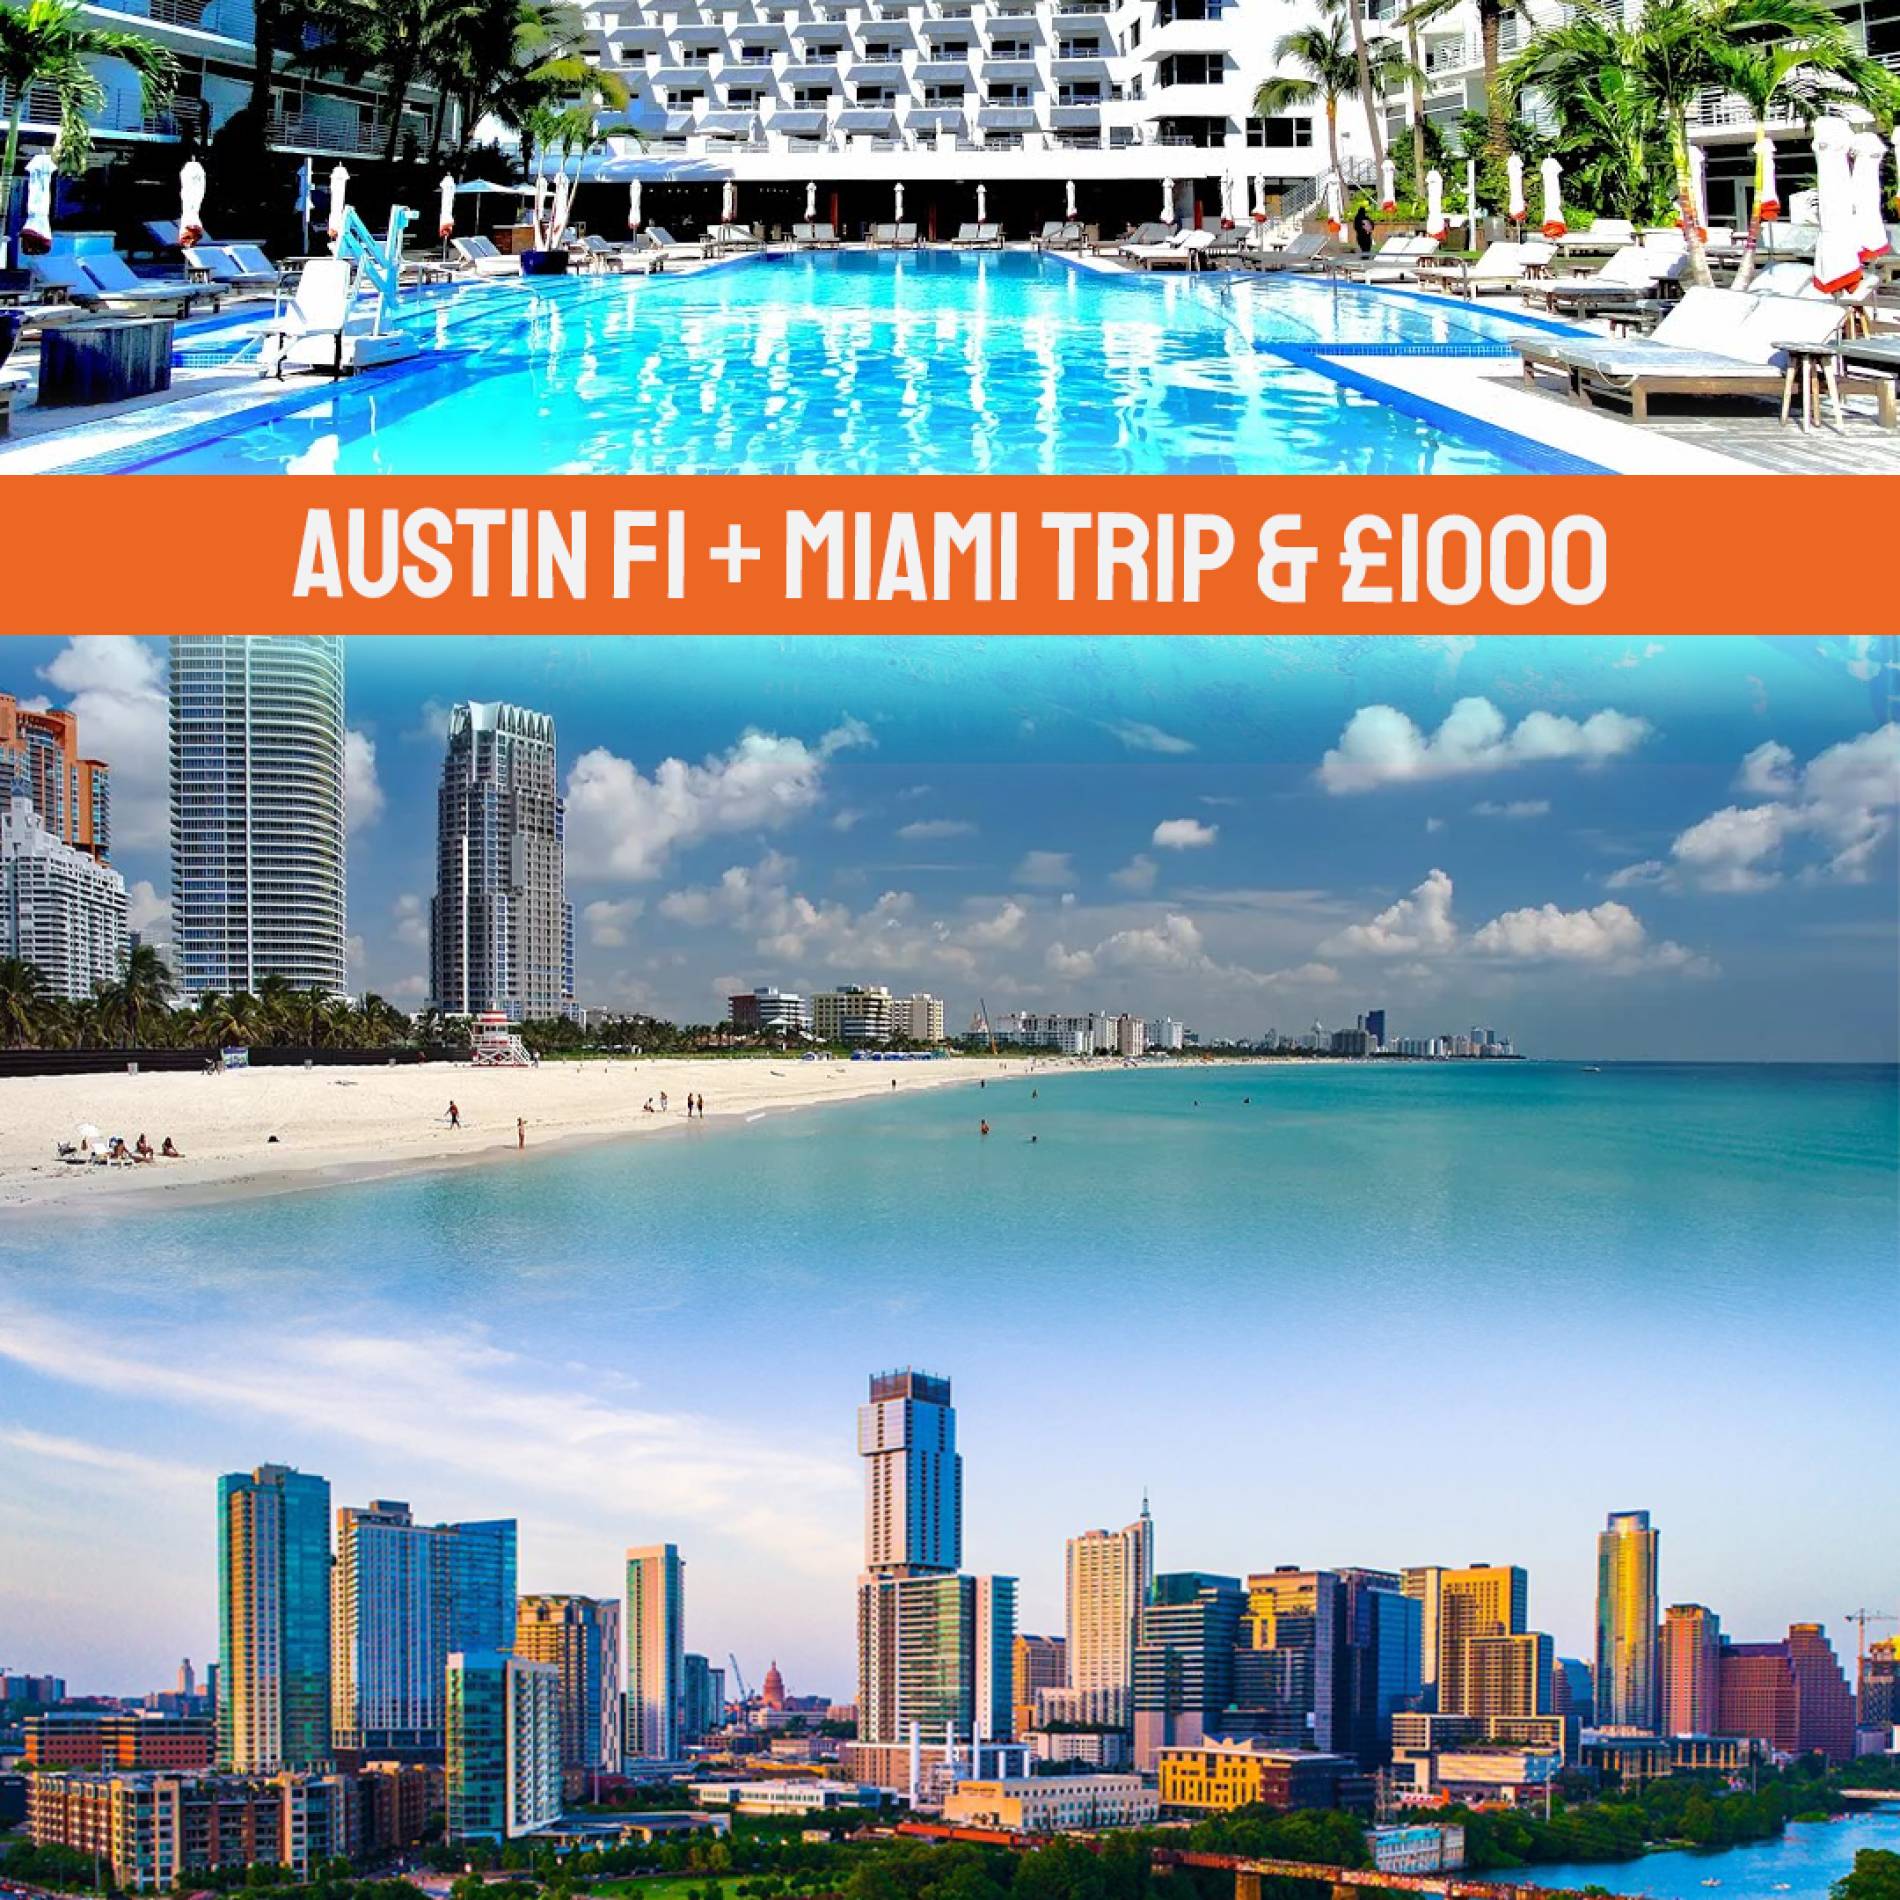 Austin F1 + Miami Trip & £1000 OR £7000 Tax Free cash